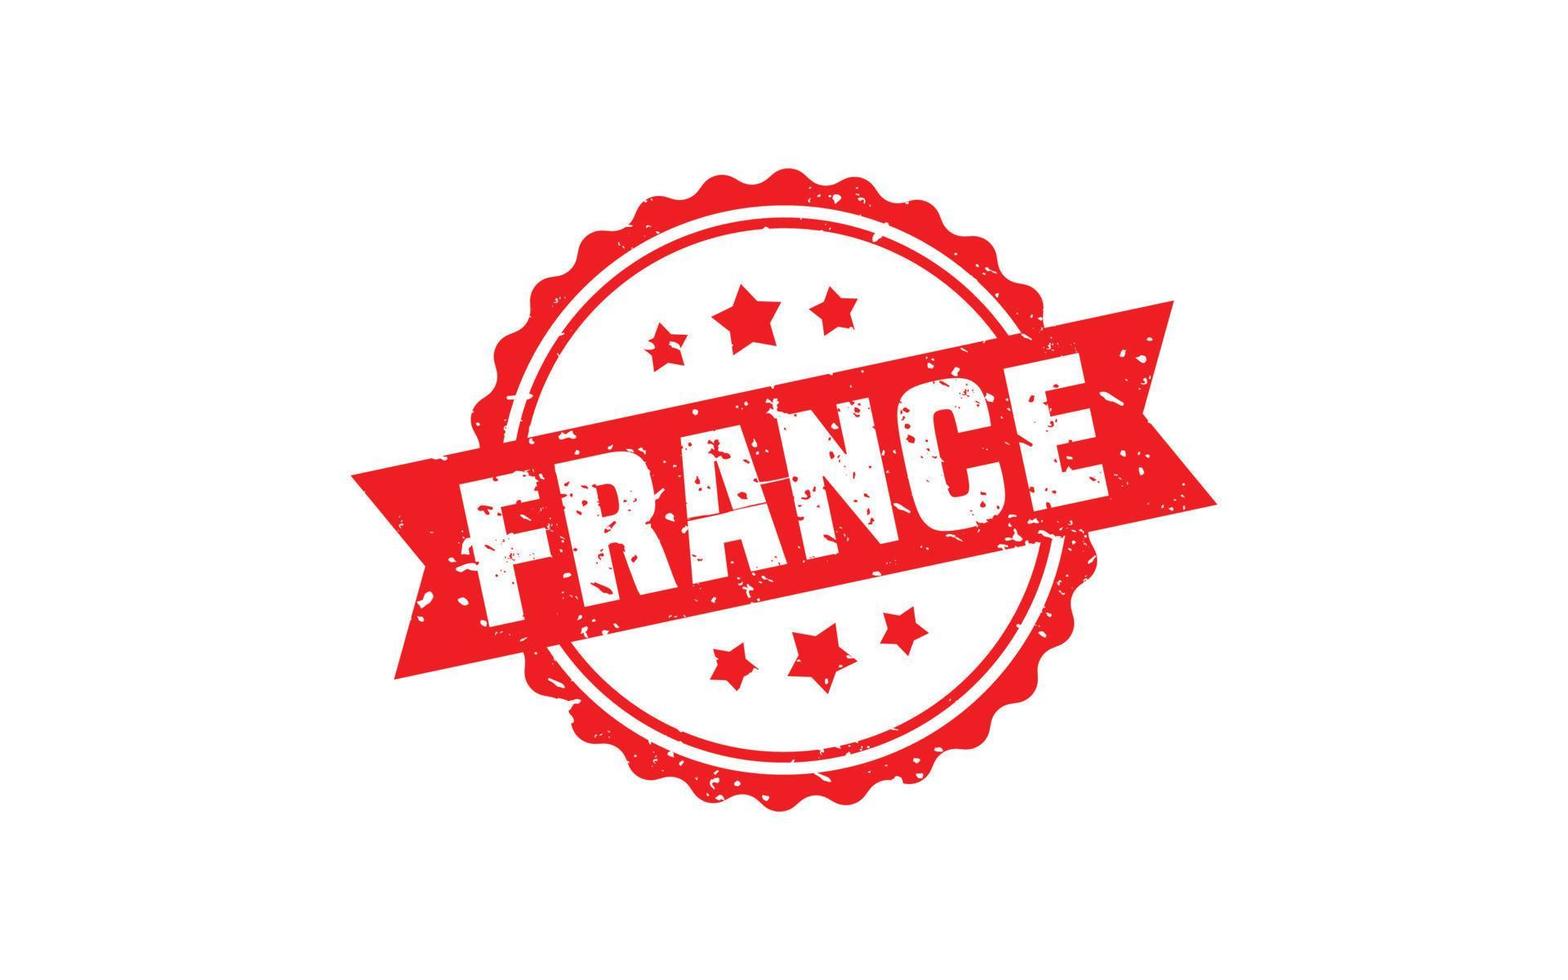 Frankreich Stempelgummi mit Grunge-Stil auf weißem Hintergrund vektor